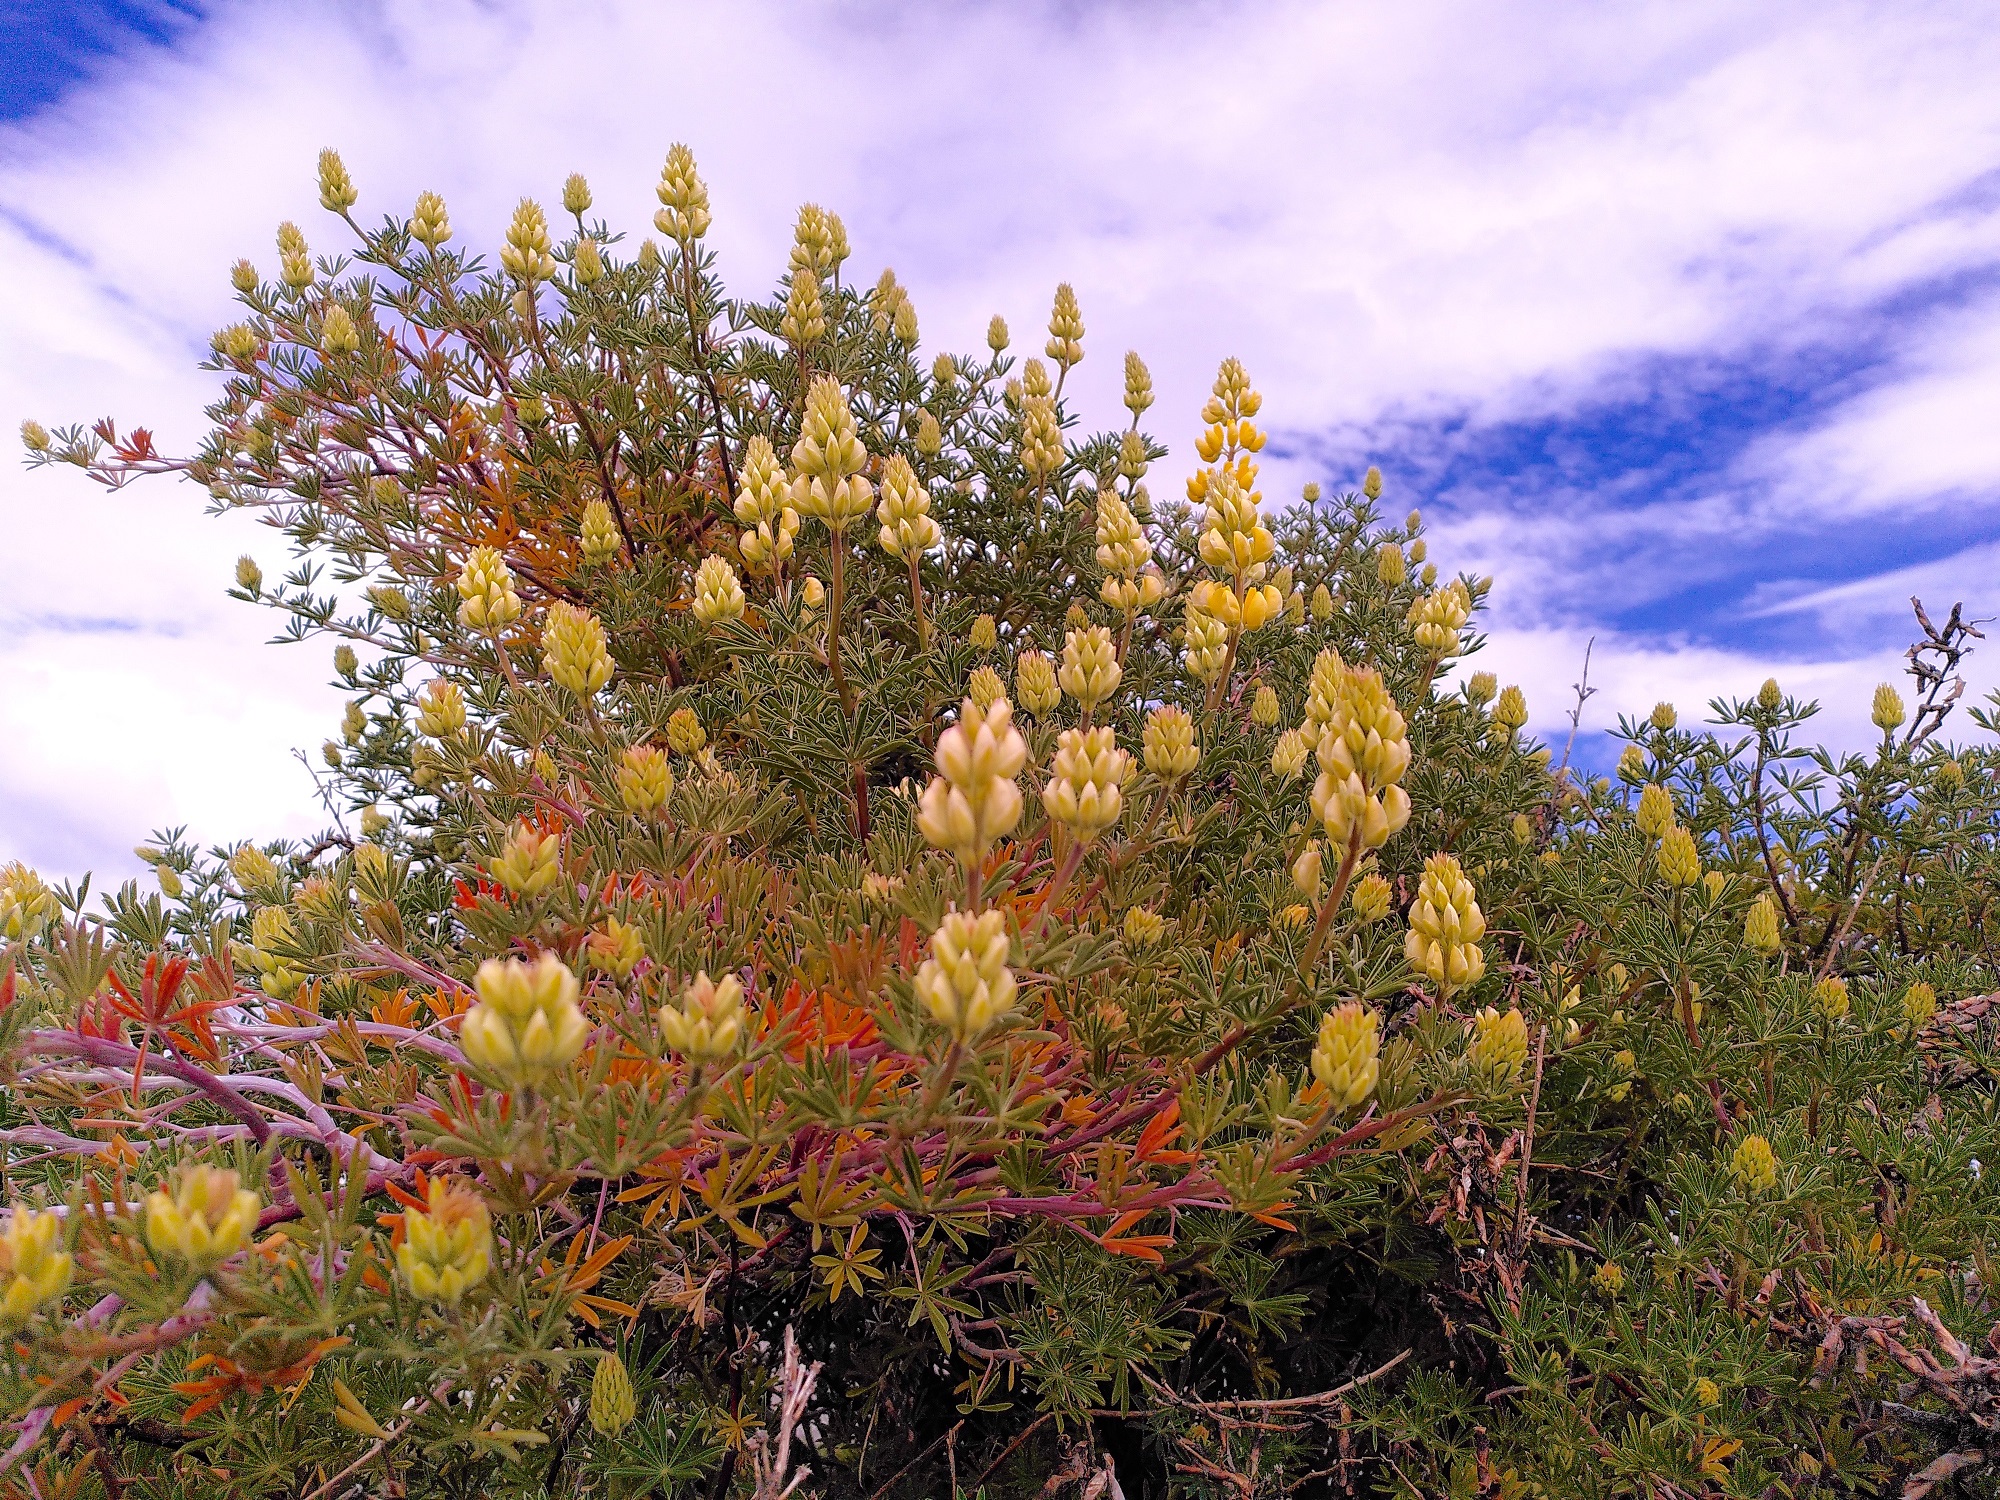 Abb. 5: Strauchlupine (Lupinus arboreus) am Strand von Punta Arenas.